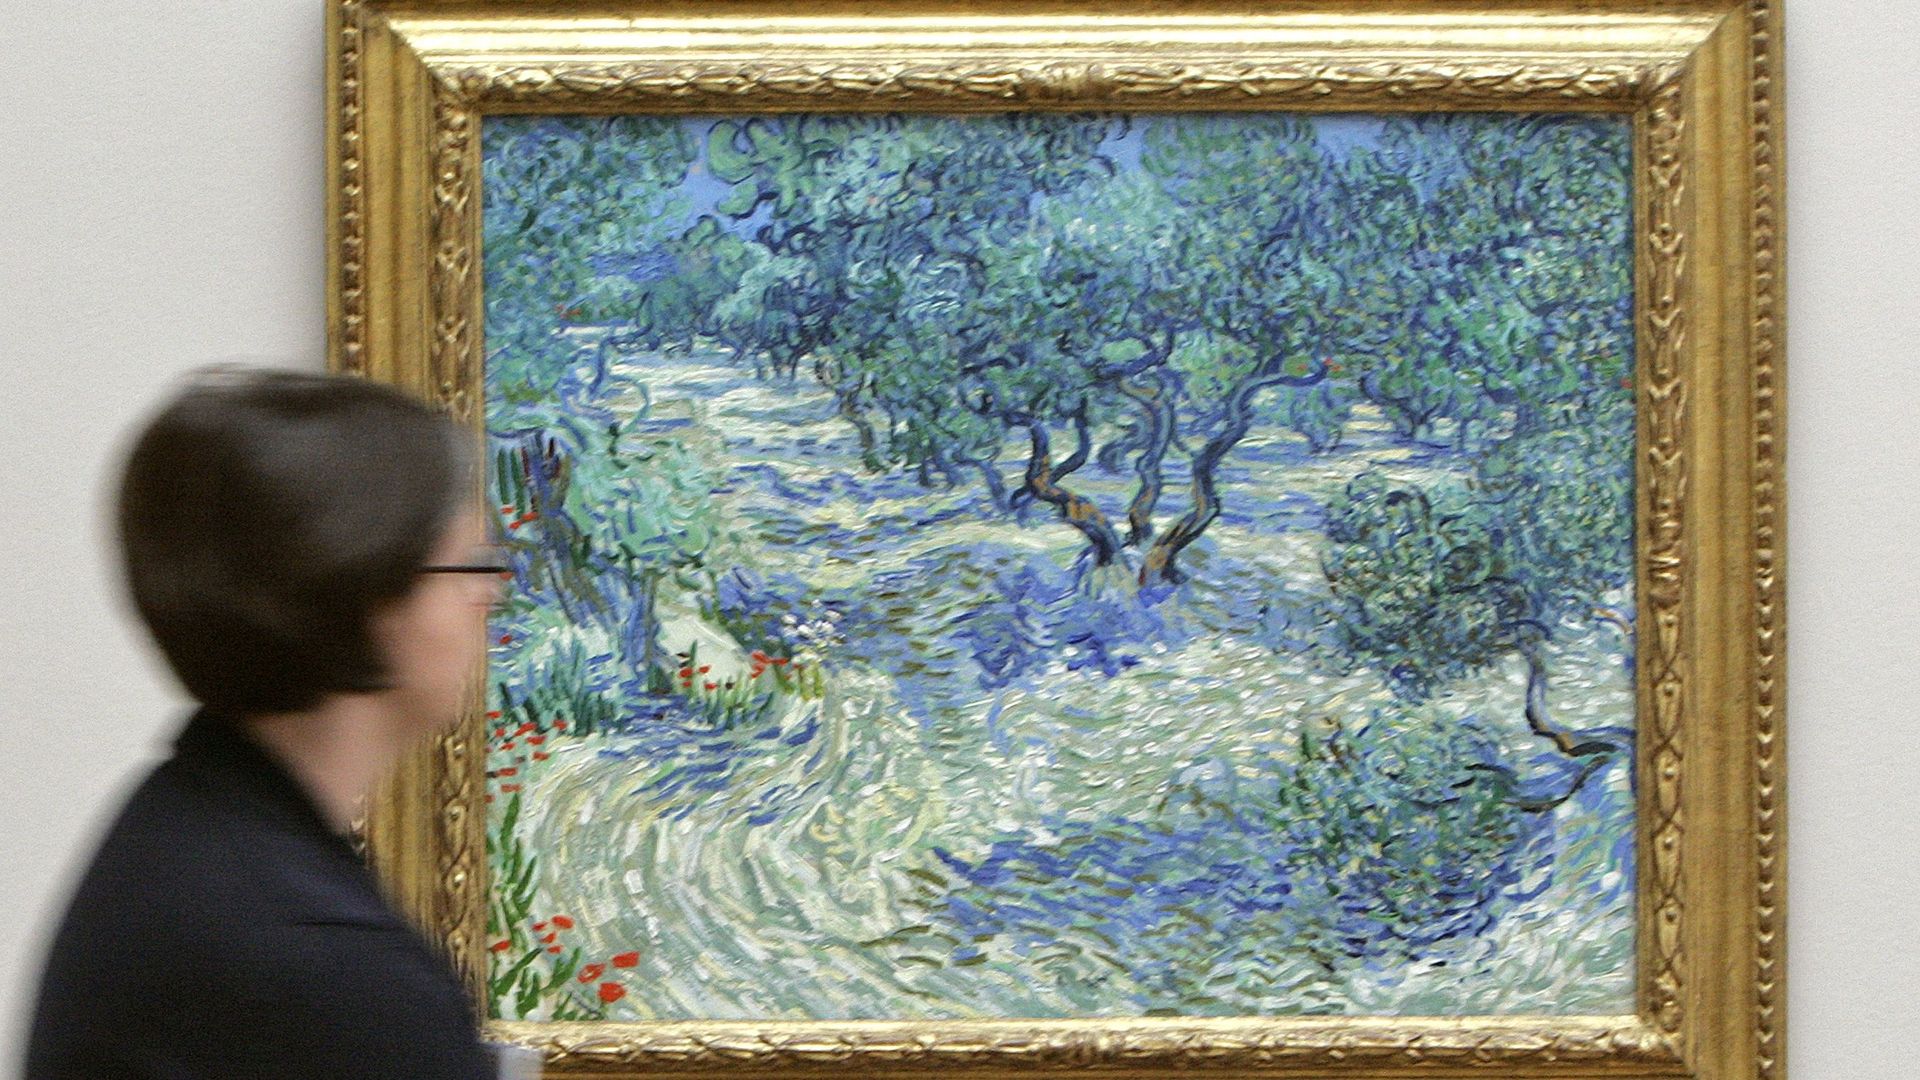 "Les Oliviers" fait partie d'une série de 18 tableaux consacrée à ces arbres et peints par Van Gogh à Saint-Rémy-de-Provence en 1889, dans l'asile où il était interné